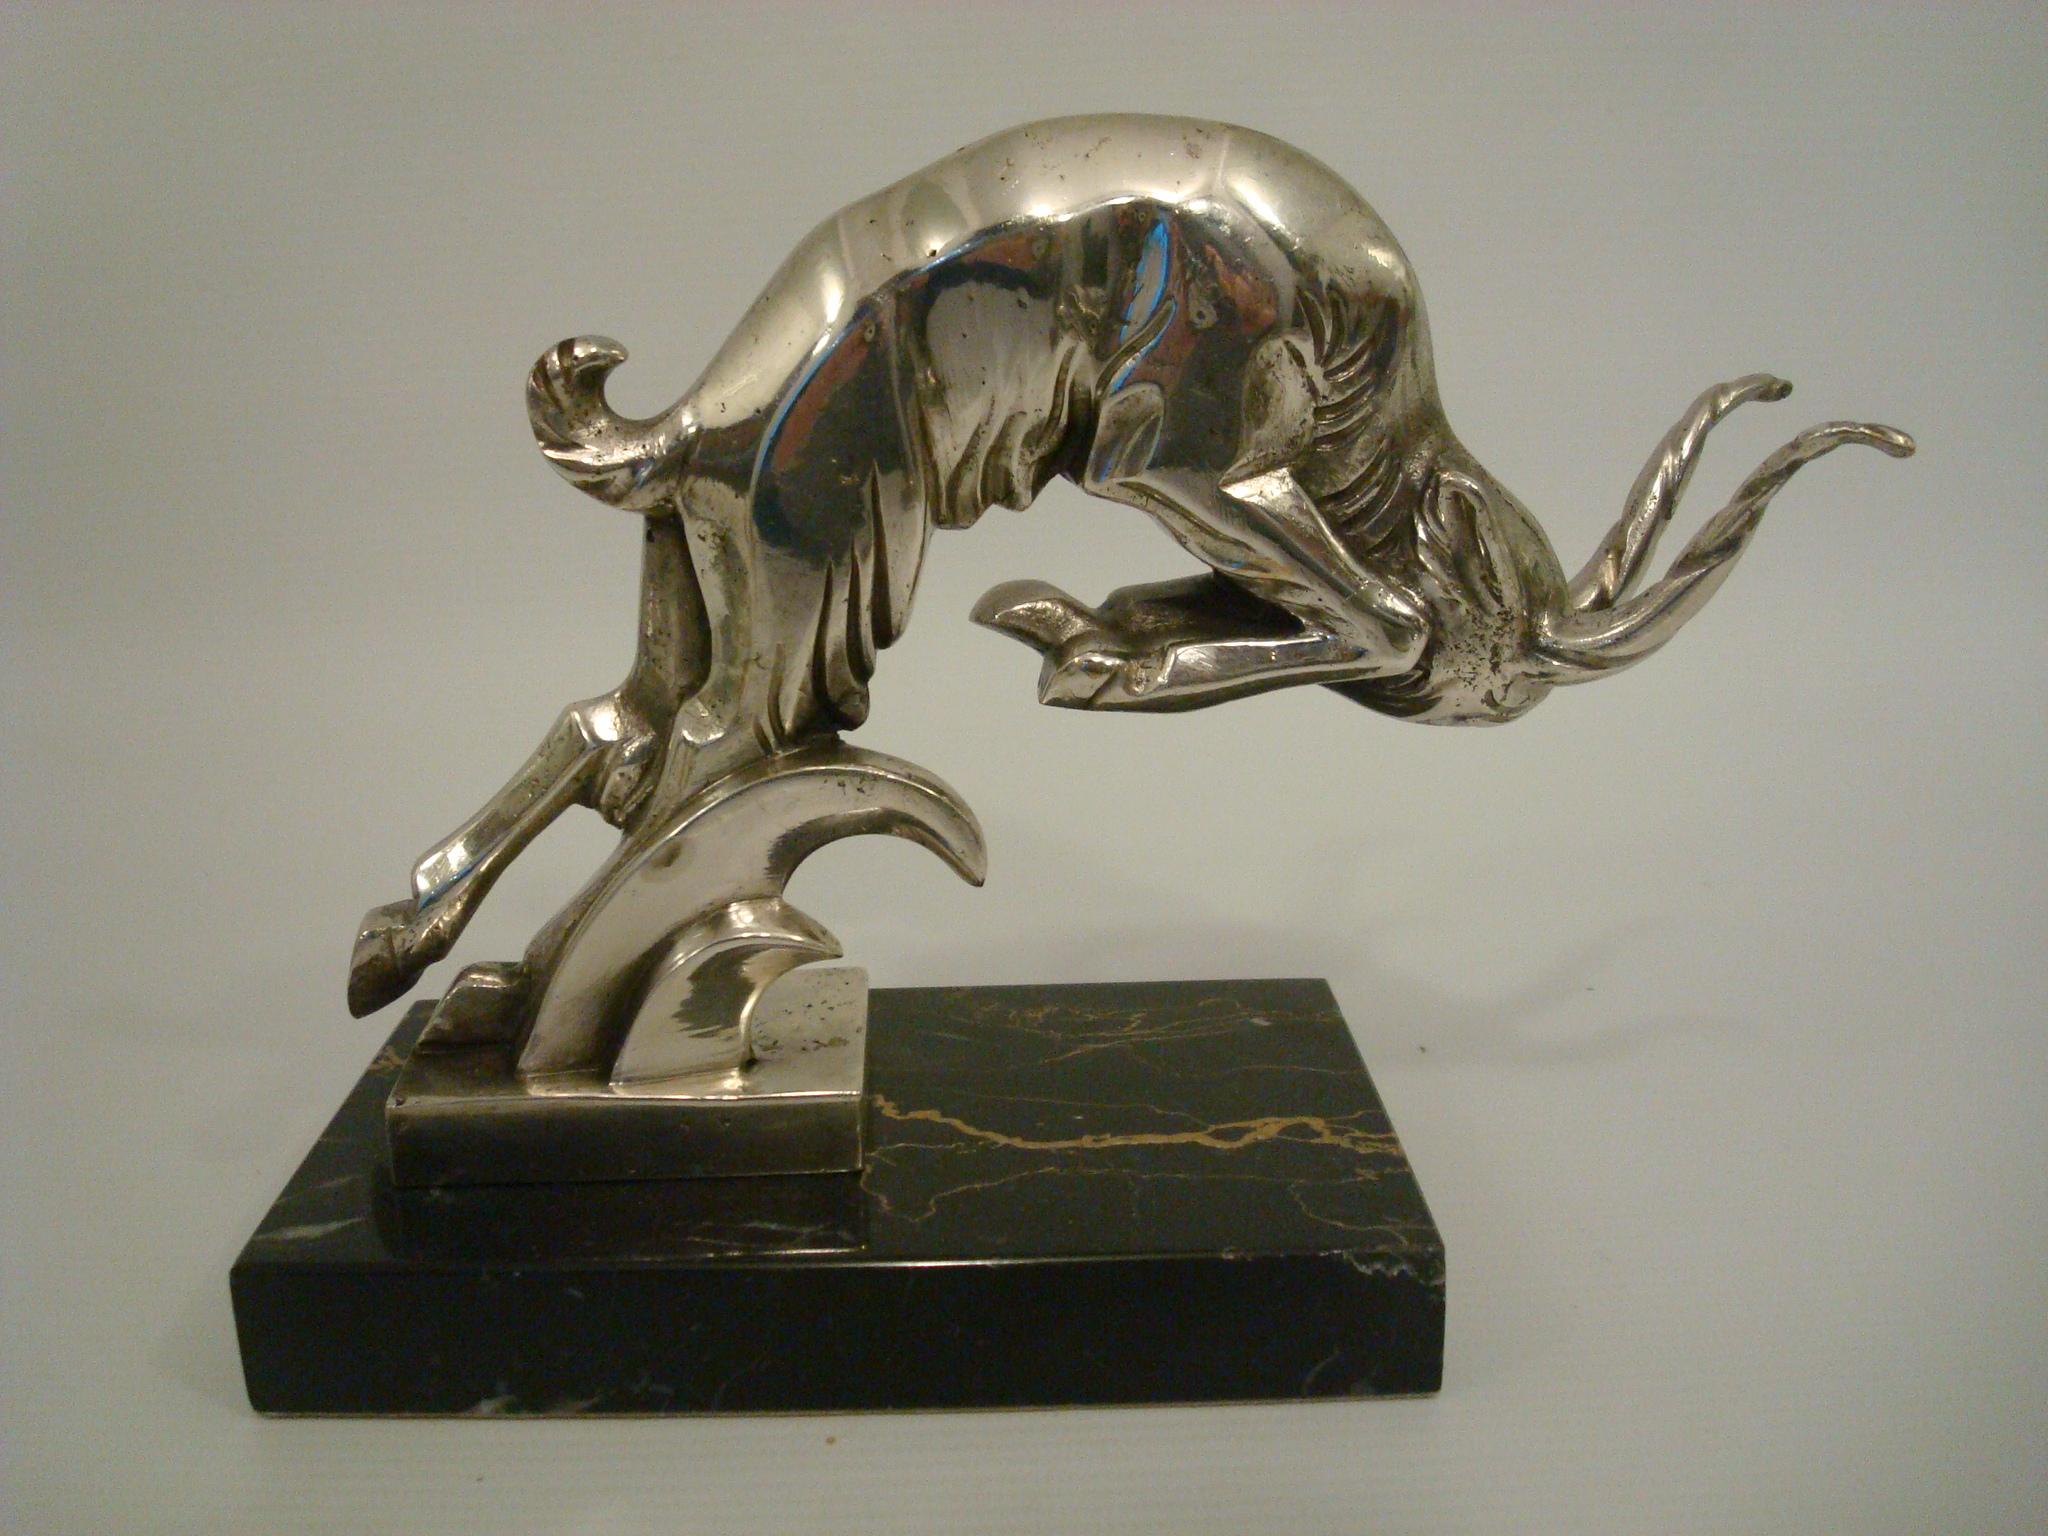 Escultura Art Decó Carnero Cargador de Bronce Plateado - Italia Años 30.
Figura firmada en la base C. Rossi y Grigio.
Perfecto pisapapeles de escritorio.